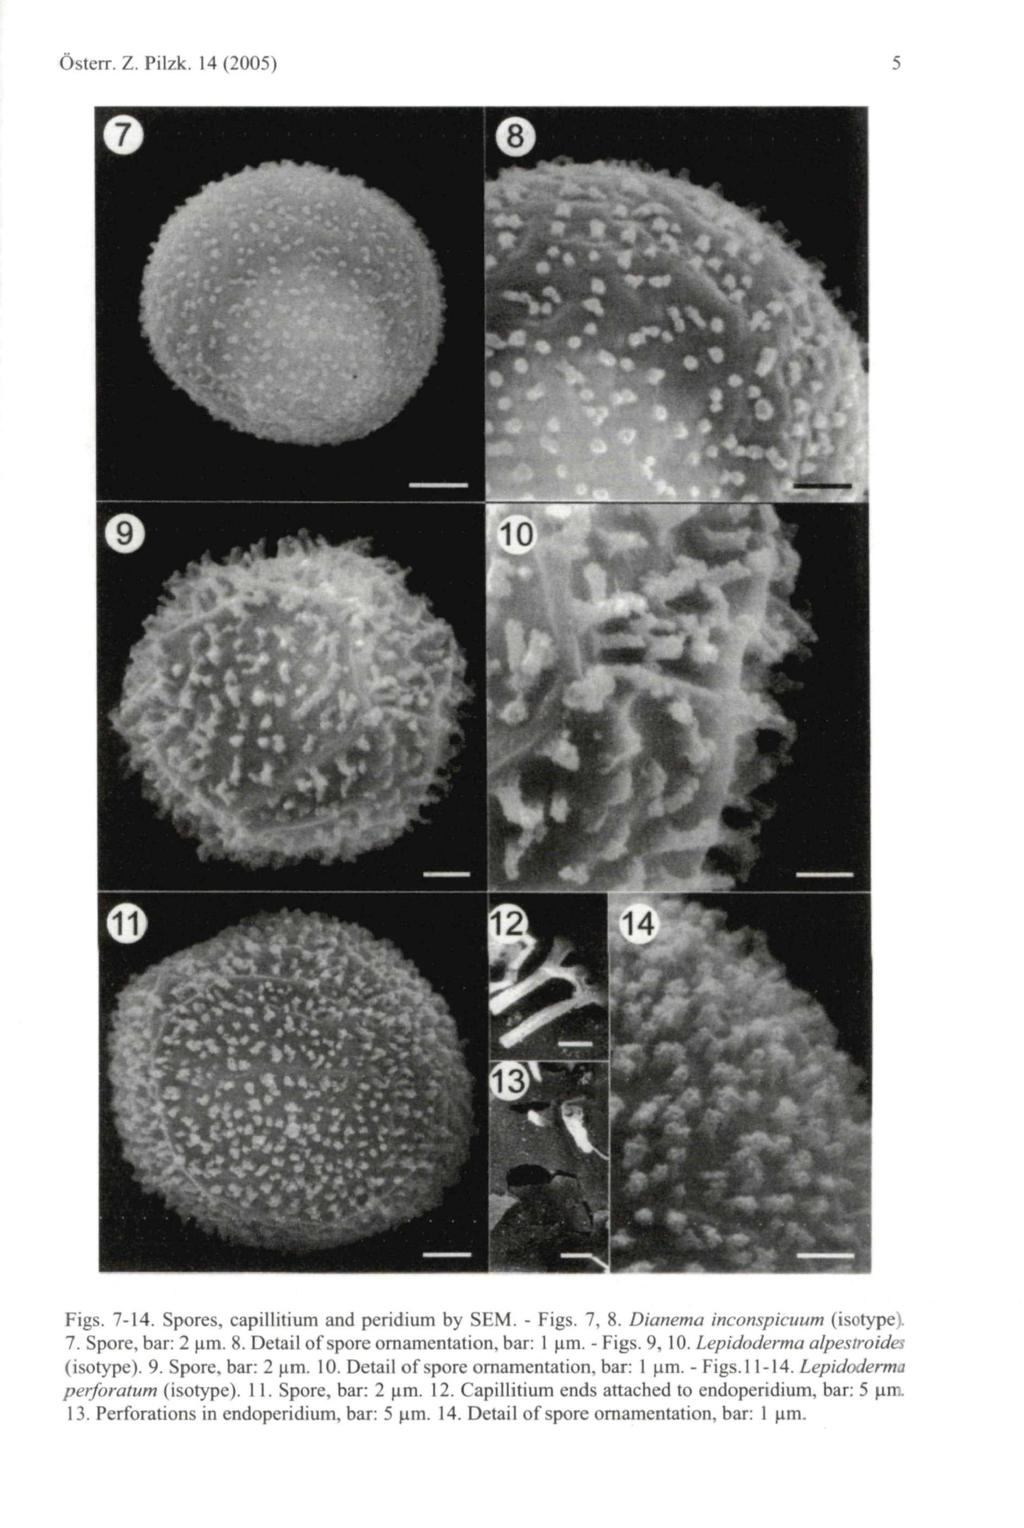 Österr. Z. Pilzk. 14(2005) Figs. 7-14. Spores, capillitium and peridium by SEM. - Figs. 7, 8. Dianema inconspicuum (isotype). 7. Spore, bar: 2 \im. 8. Detail of spore ornamentation, bar: 1 um. - Figs. 9, 10.